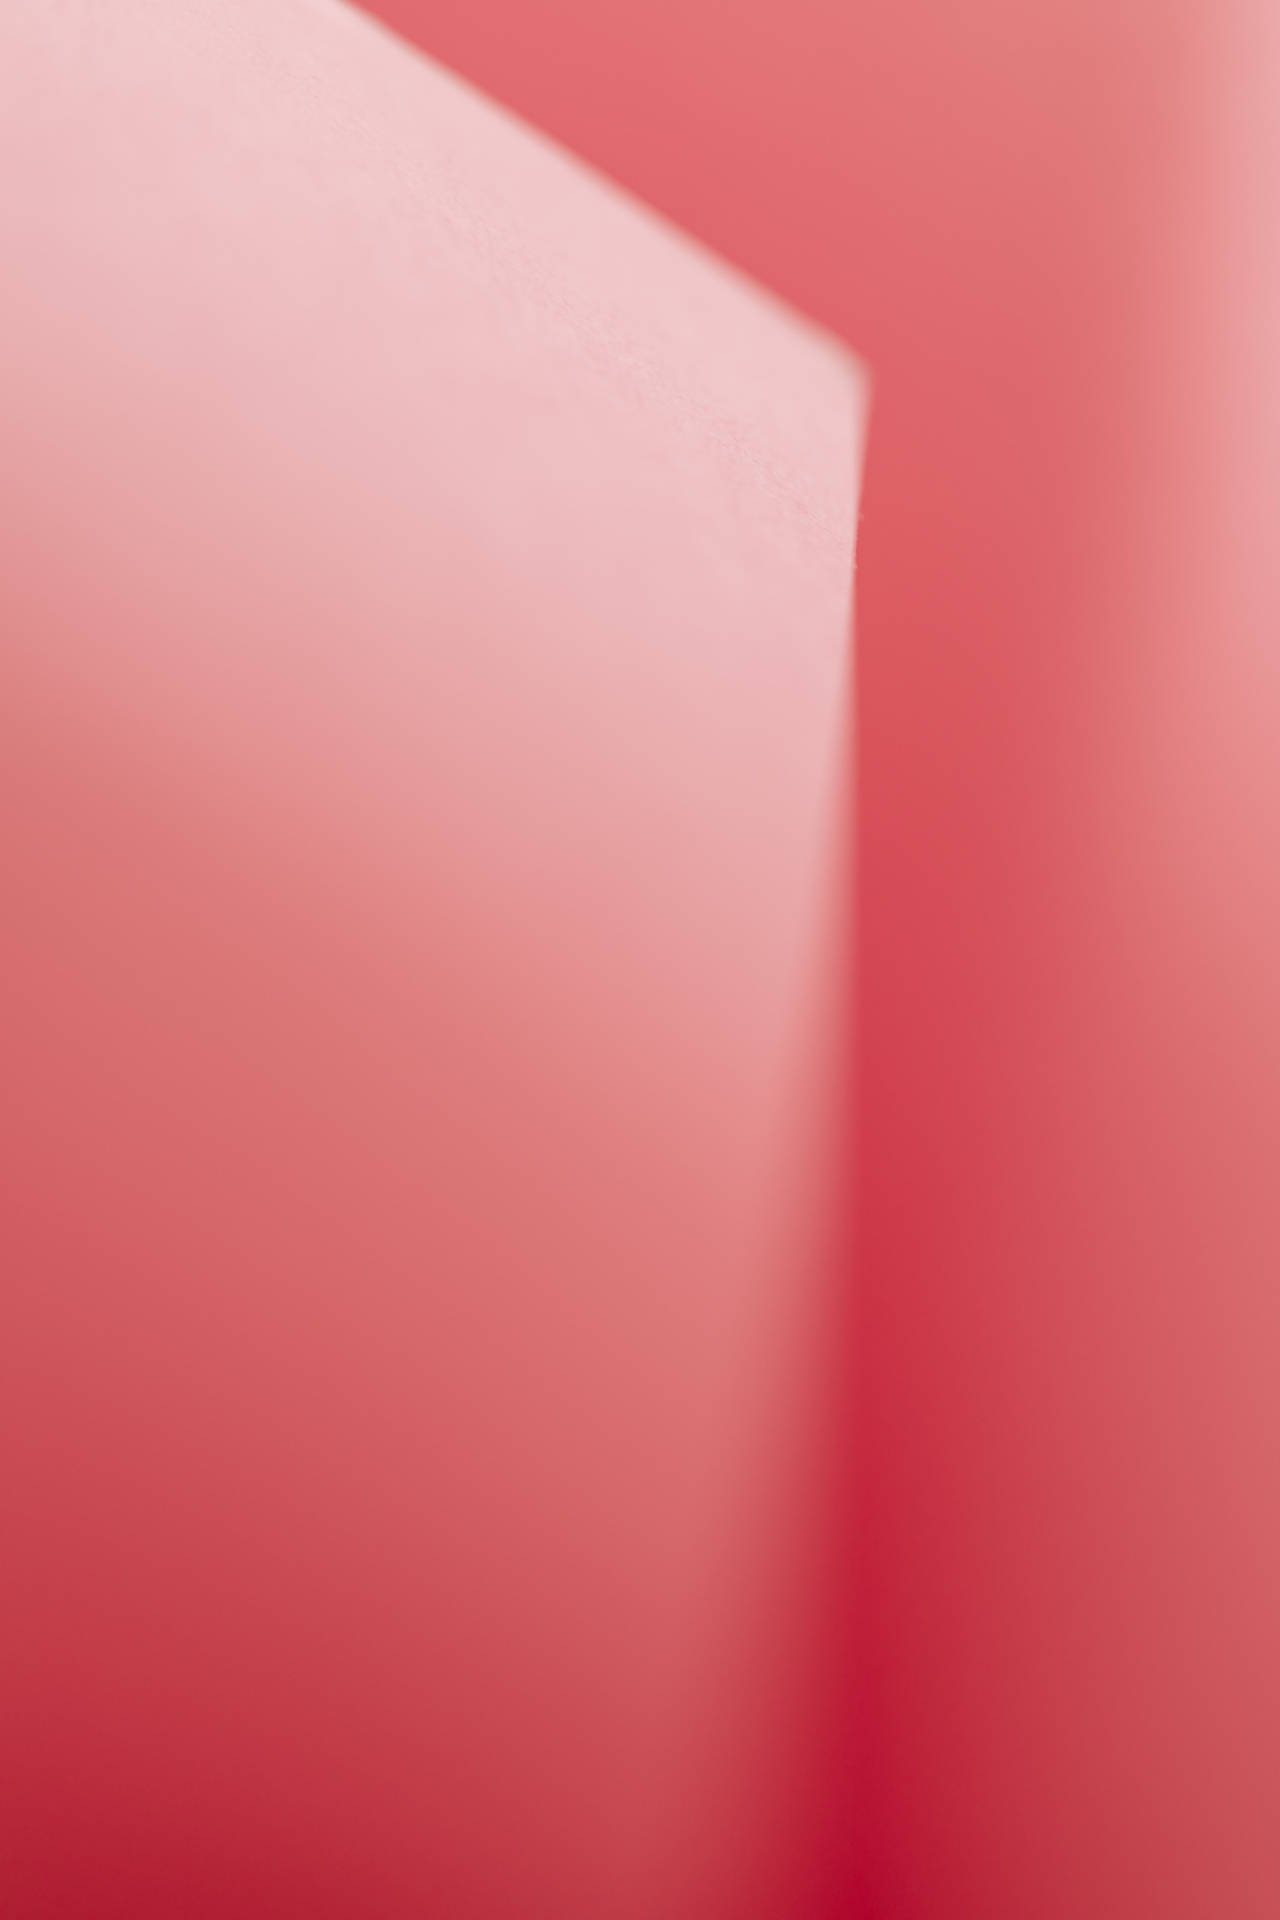 Ascores Suaves Rosa E Branco Evocam Uma Sensação De Tranquilidade Quando Aplicadas Como Papel De Parede Em Computadores Ou Celulares. Papel de Parede